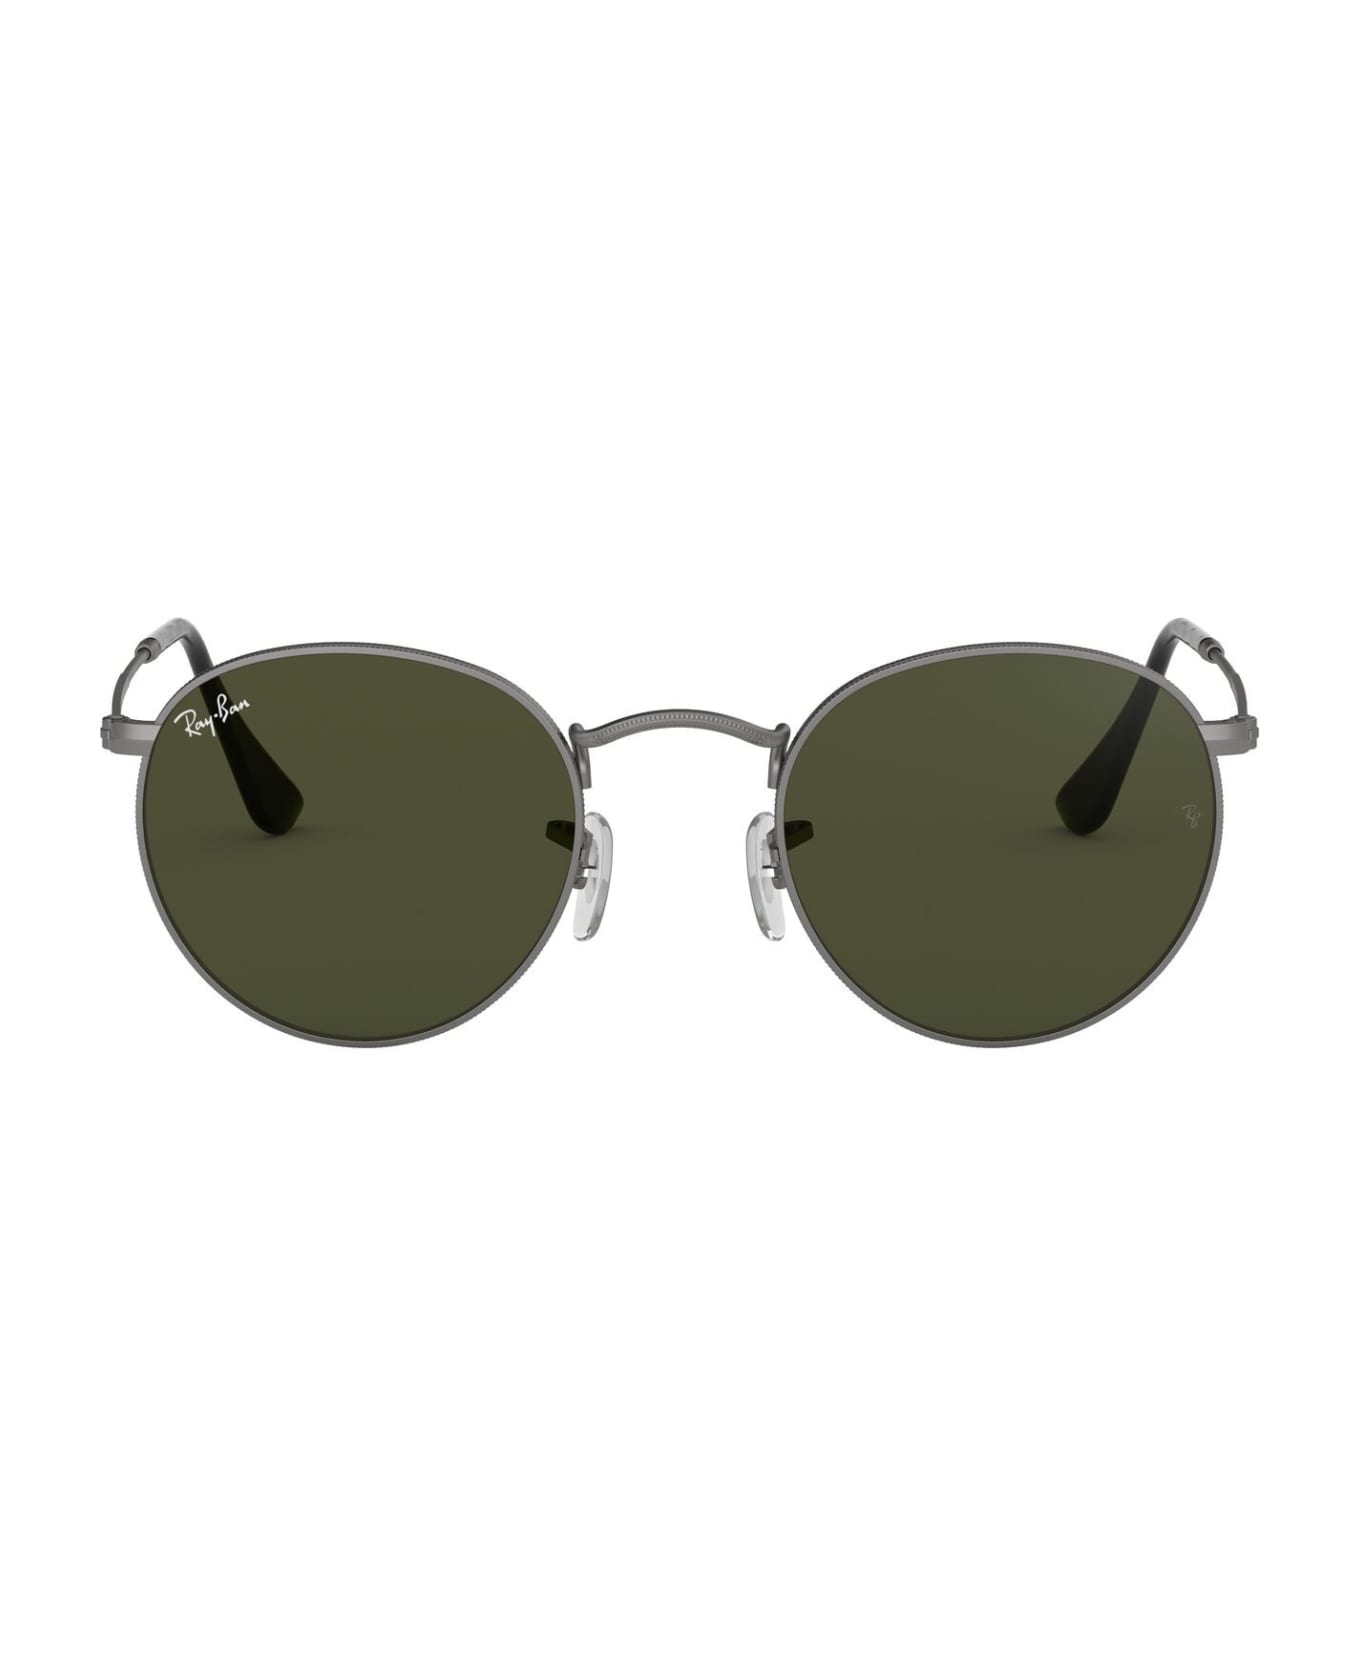 Ray-Ban Sunglasses - Canna di fucile/Verde